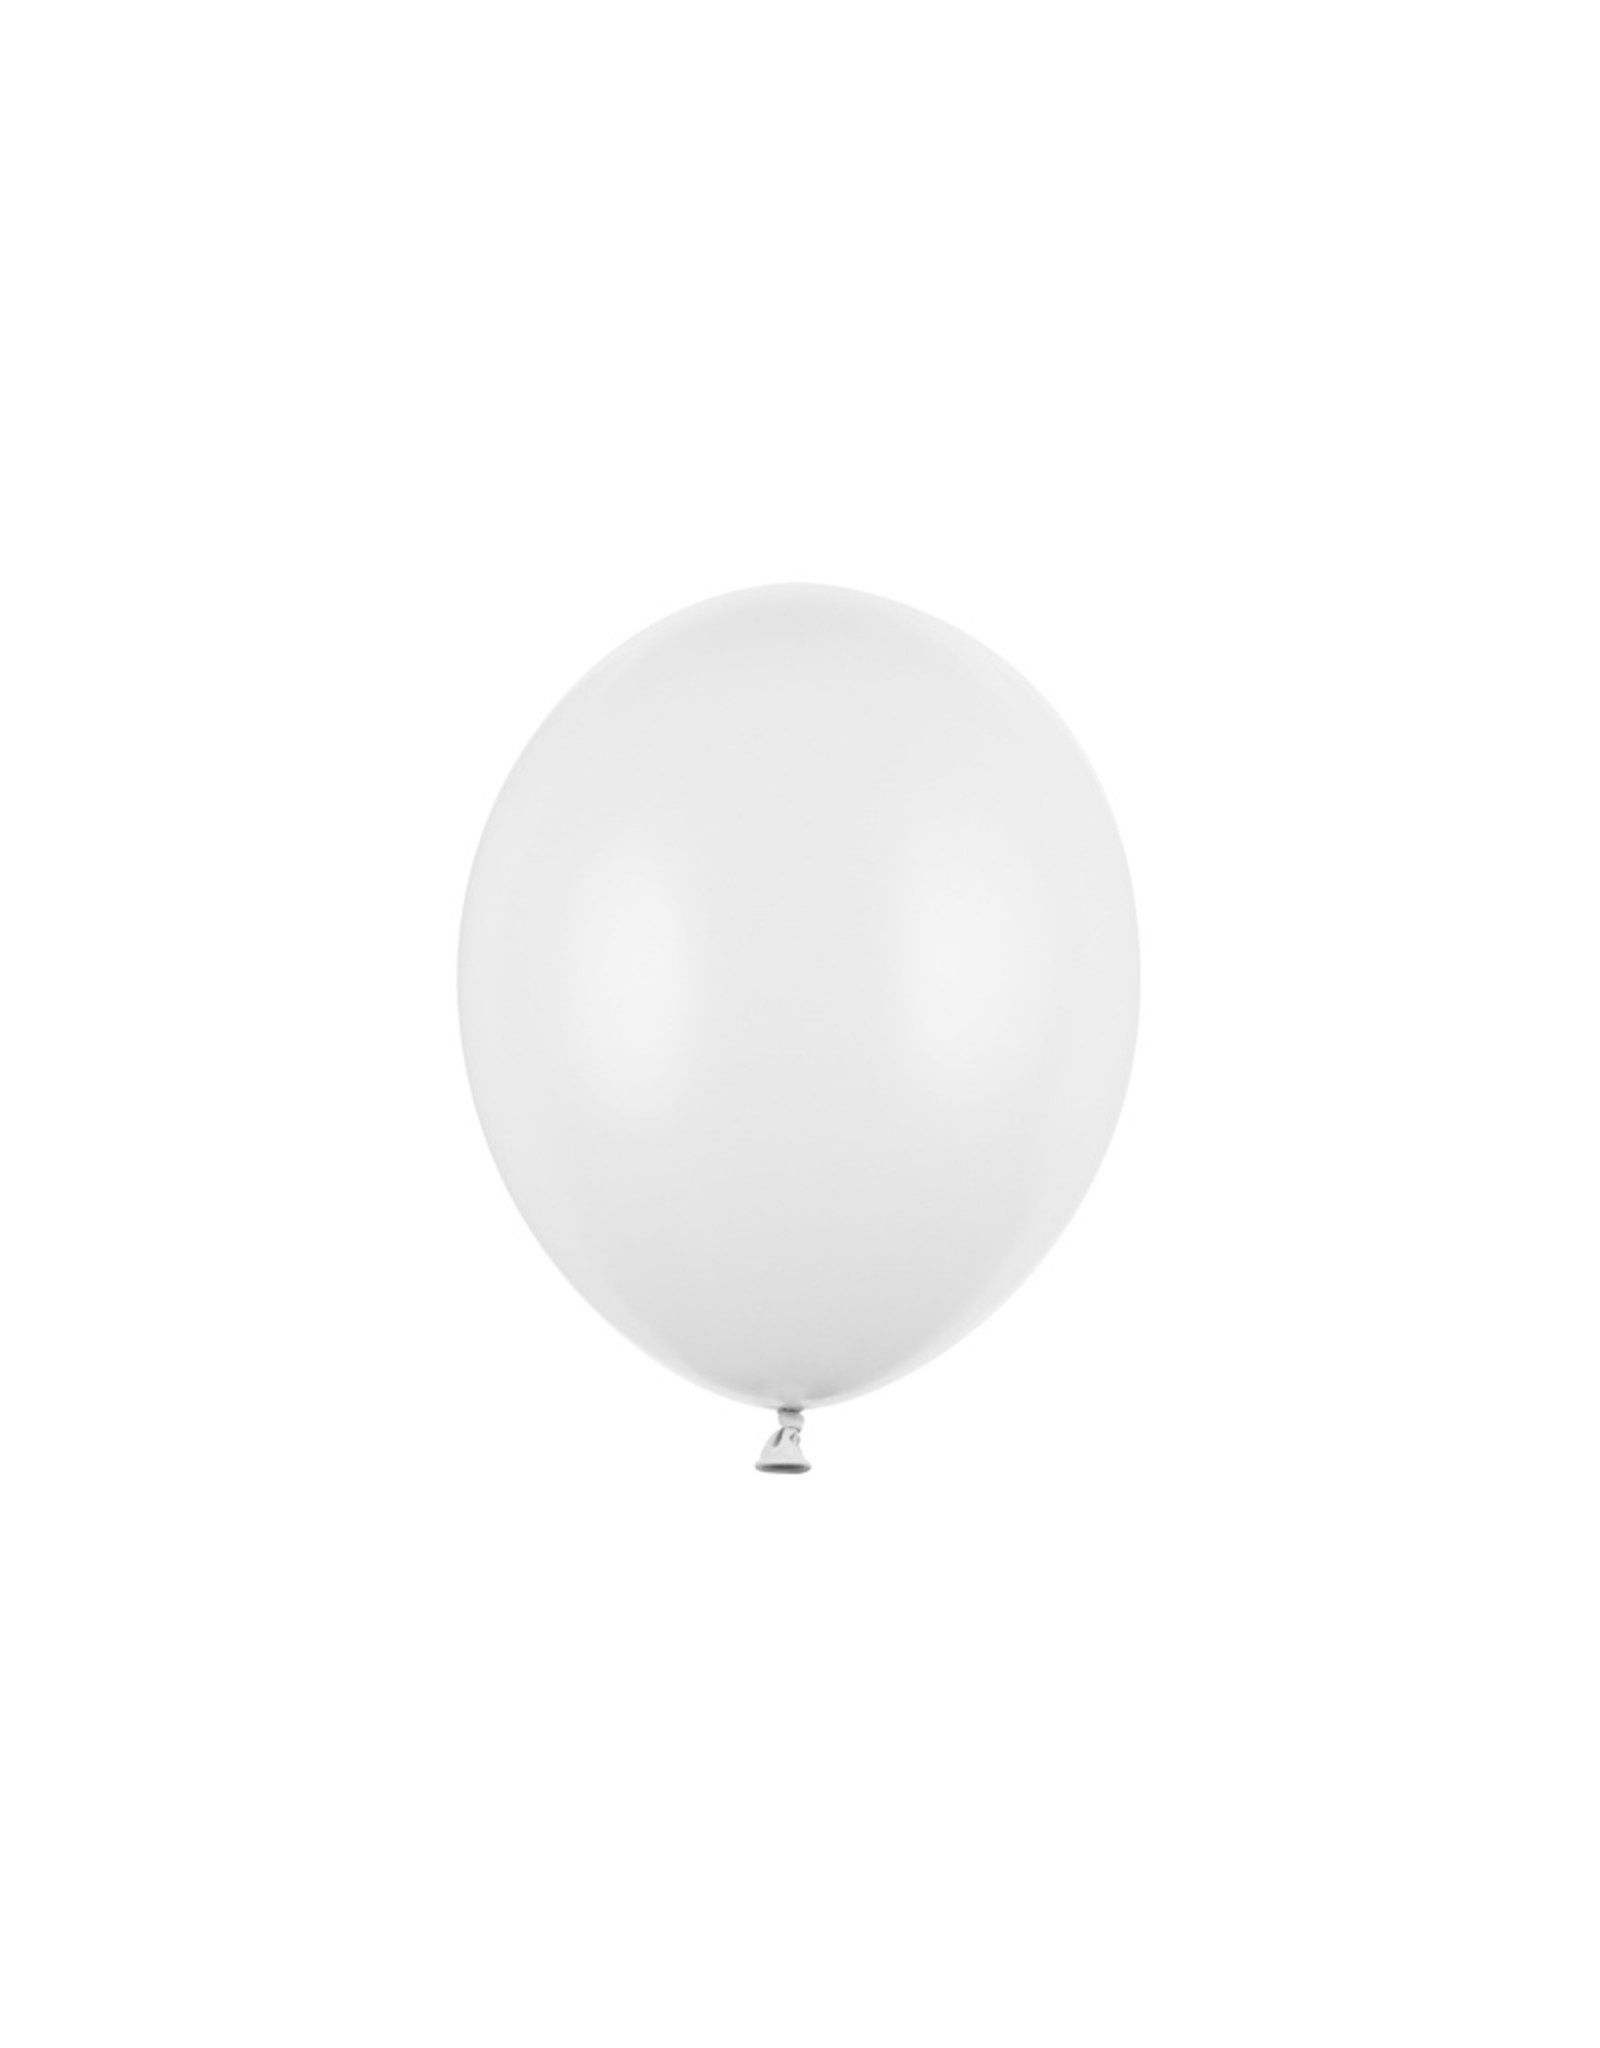 Ballonnen 27 cm wit 10 stuks